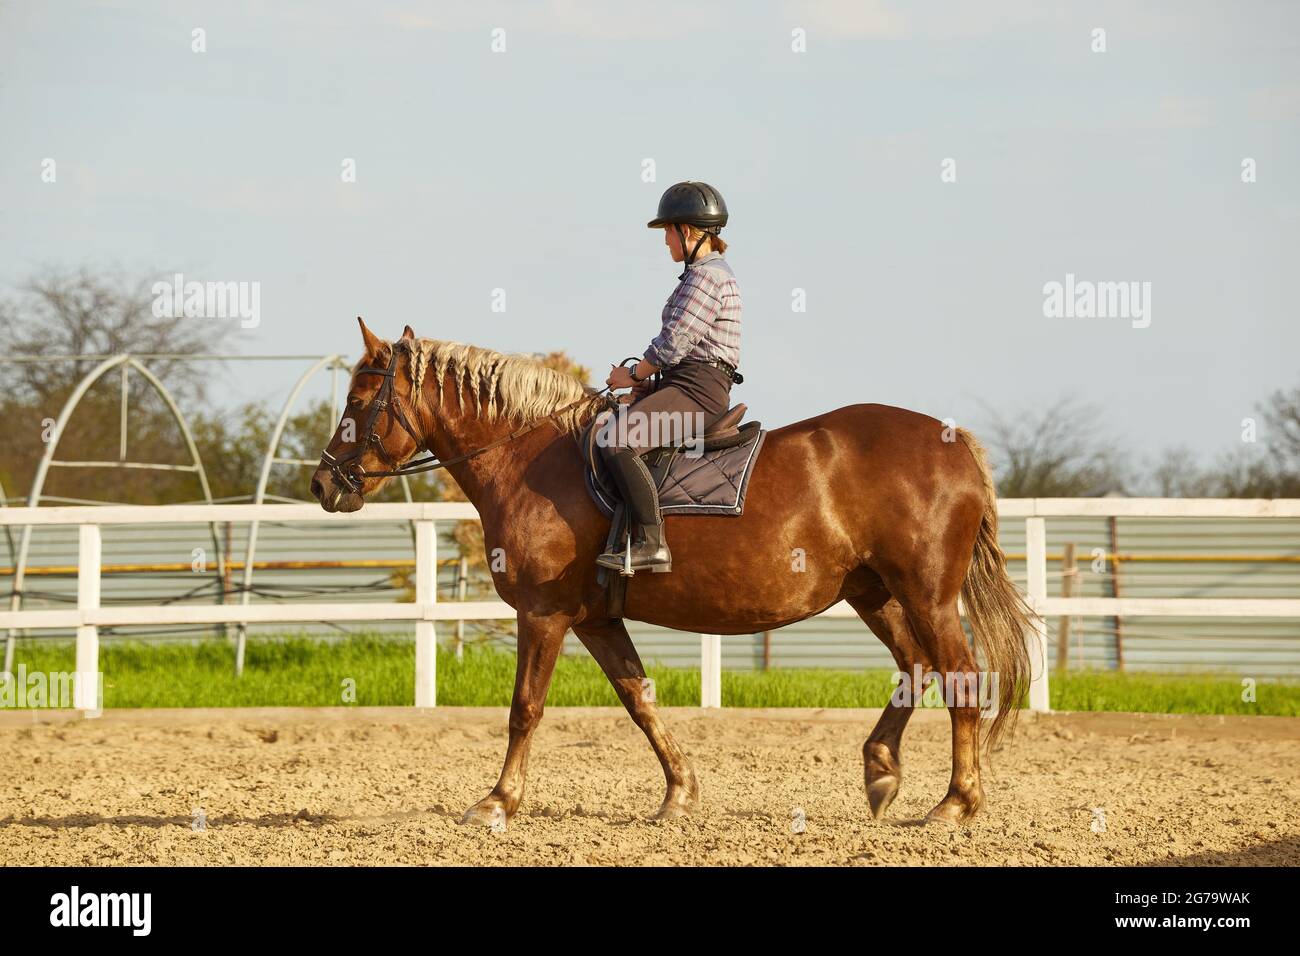 La giovane ragazza cavalca un cavallo con una manna leggera Foto Stock